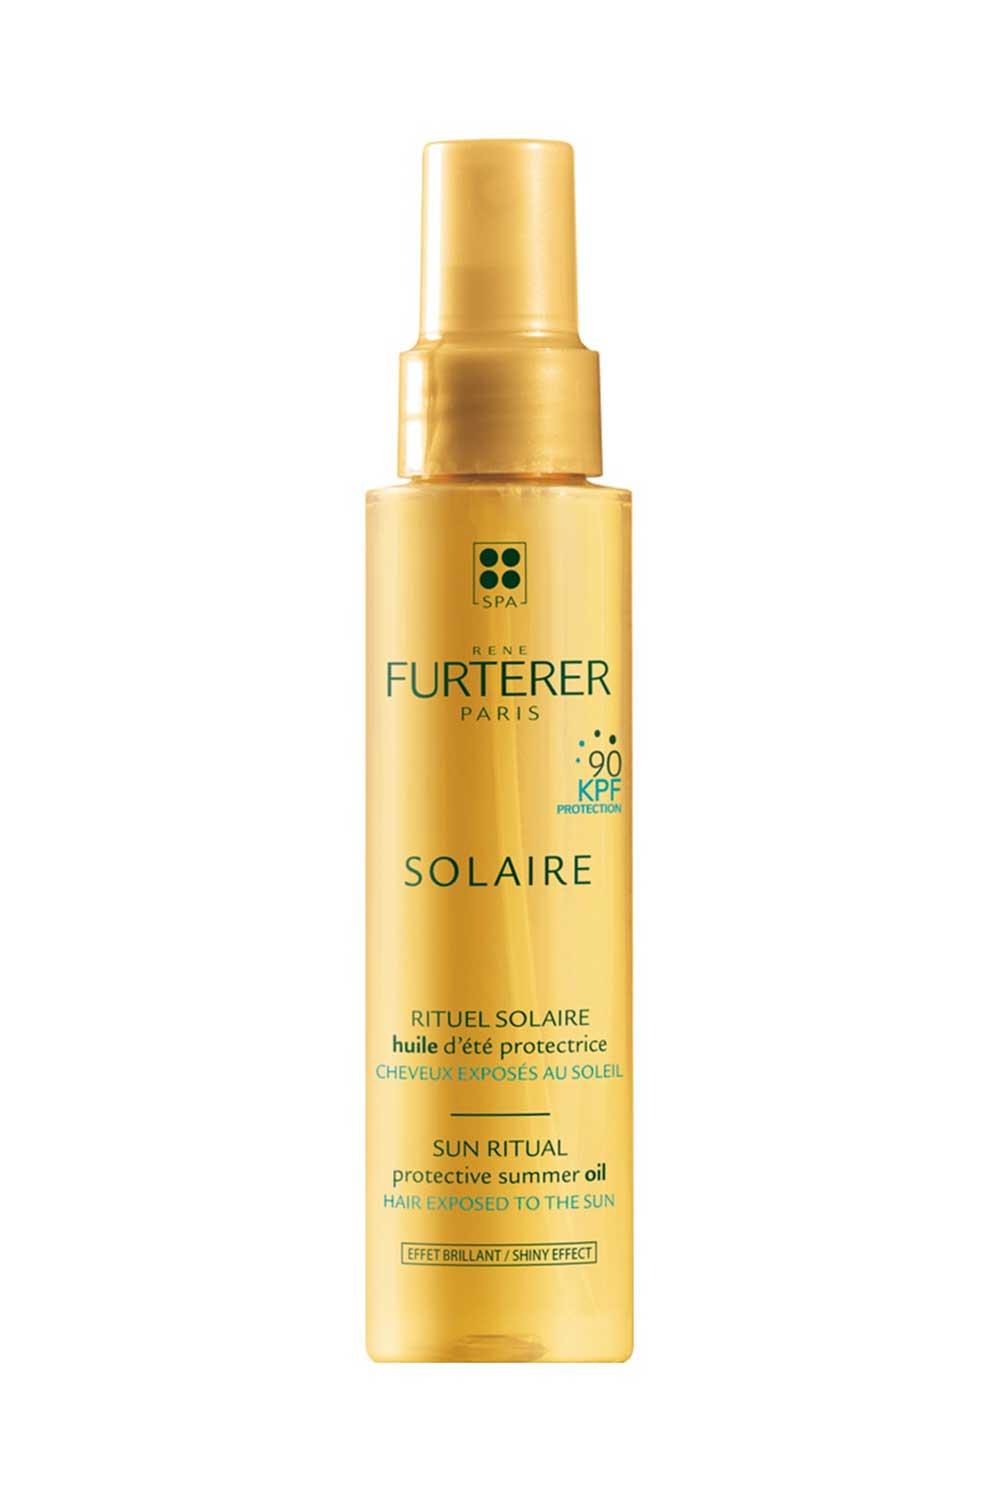 Aceite solar protector para el cabello KPF 90 René Furterer